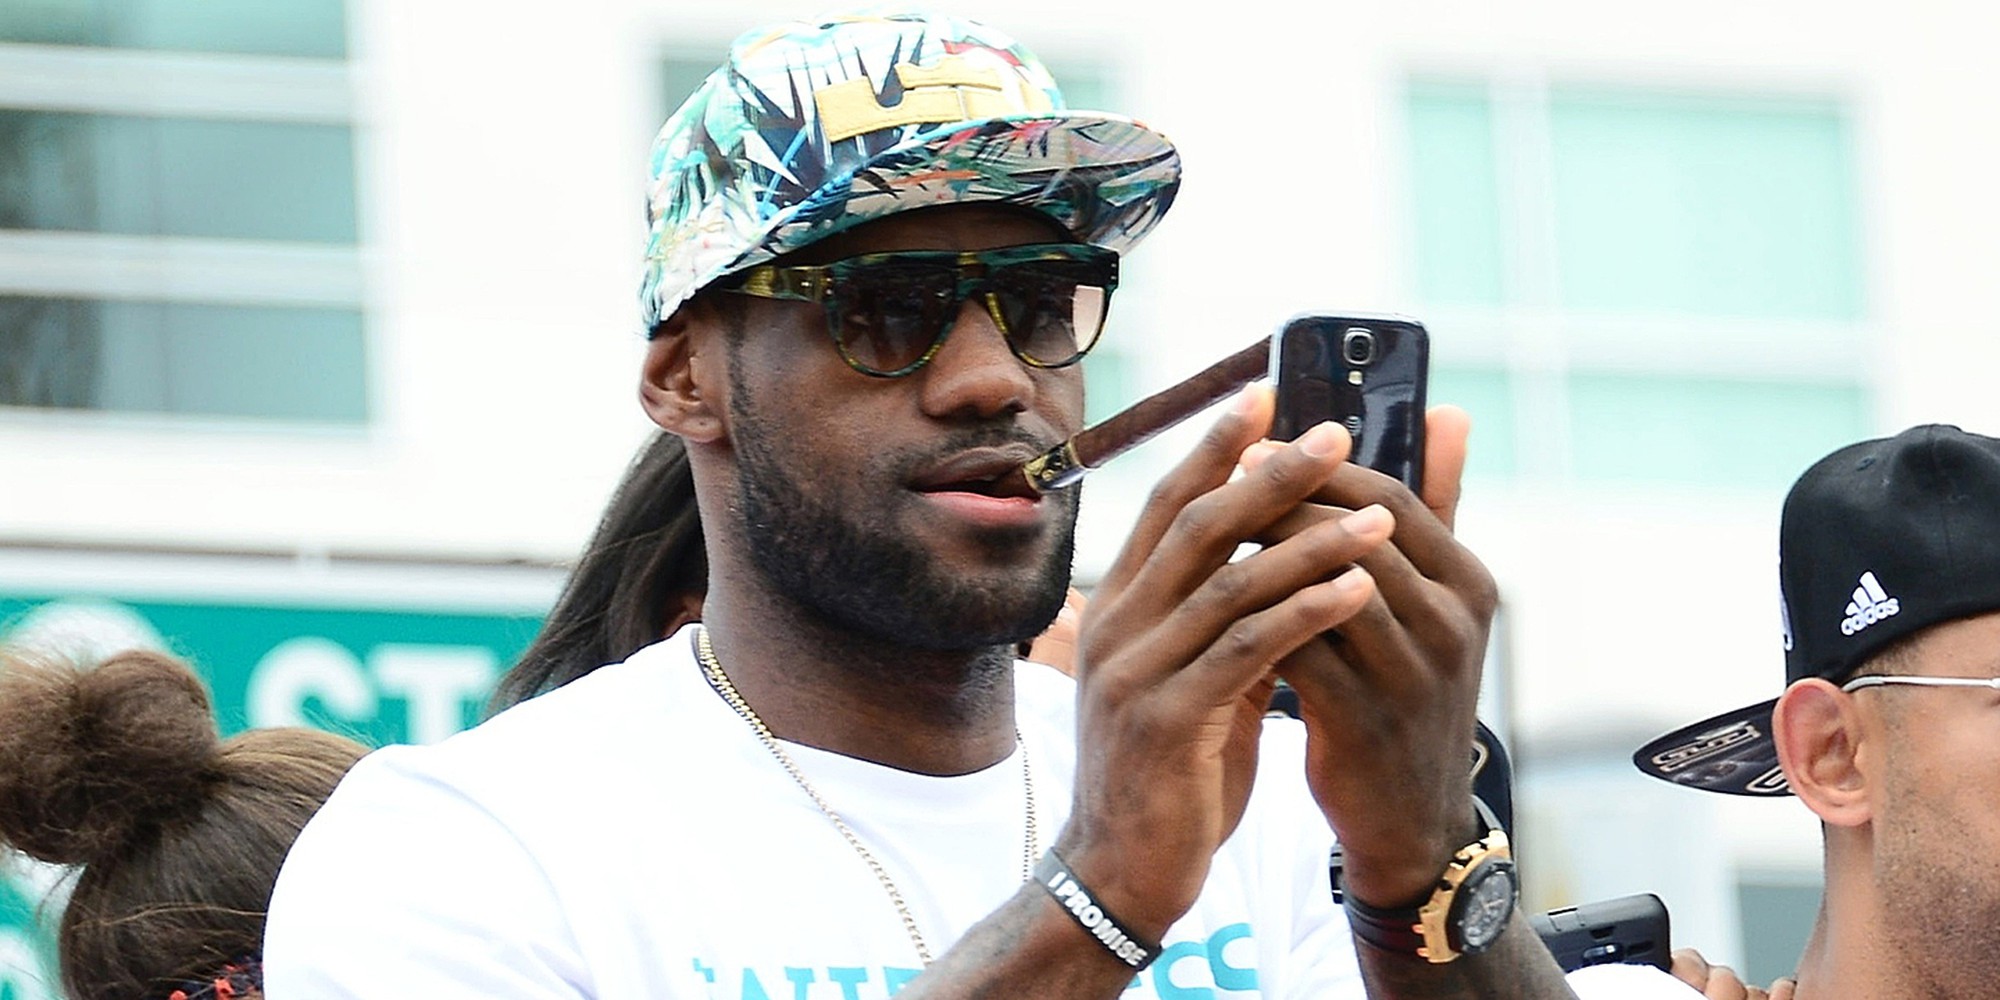 Vì sao nhiều đội bóng NBA đã áp dụng biện pháp tịch thu điện thoại của cầu thủ? - Ảnh 2.